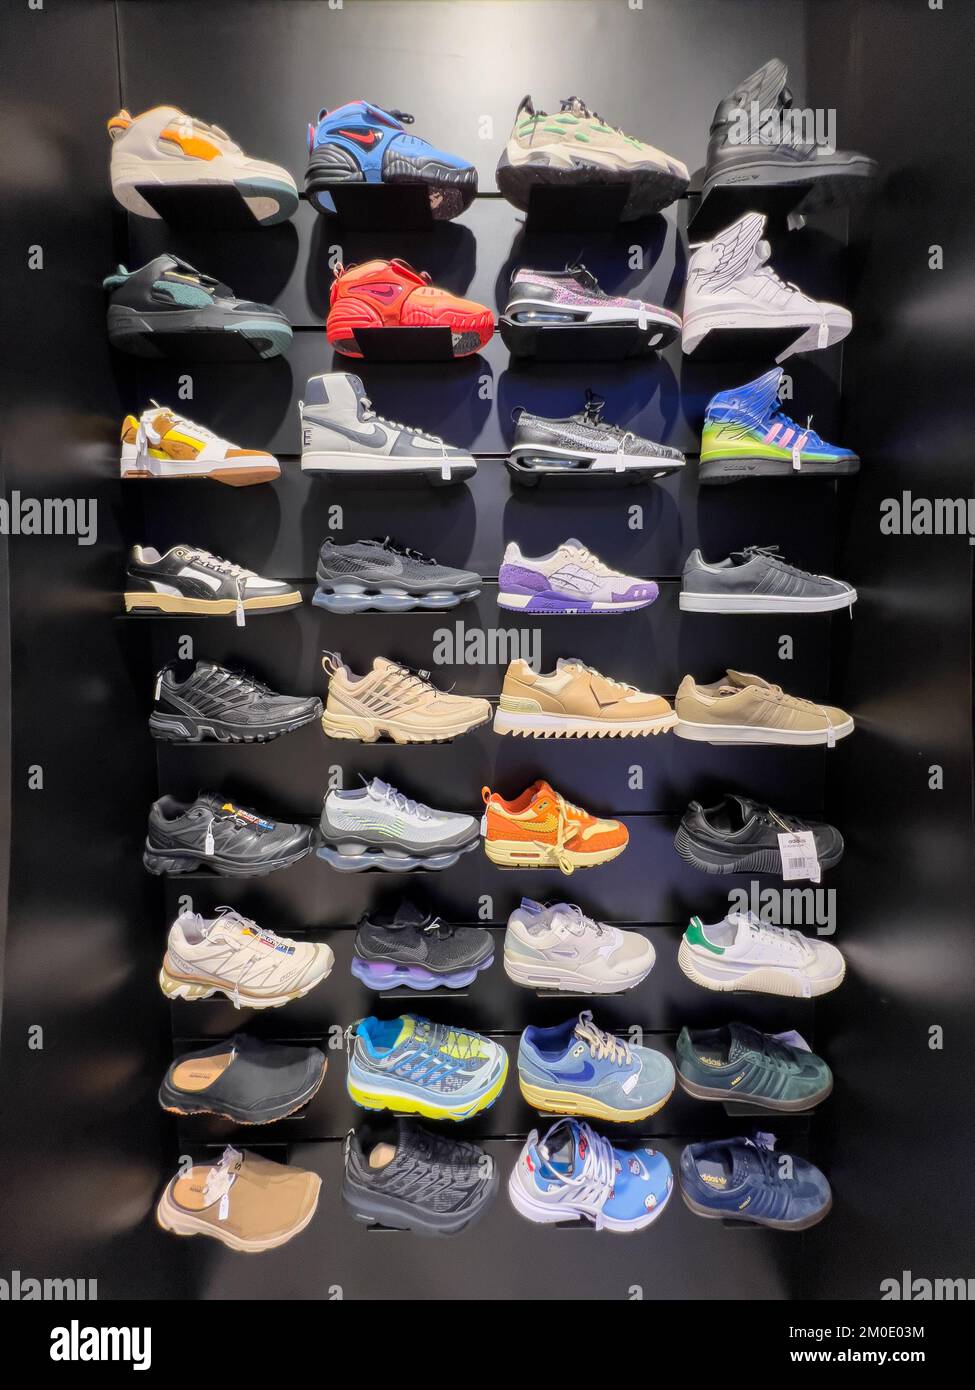 Le sneaker Nike, Adidas, Puma sono esposte sugli scaffali per consentire al visitatore di scegliere il proprio stile preferito. Foto Stock